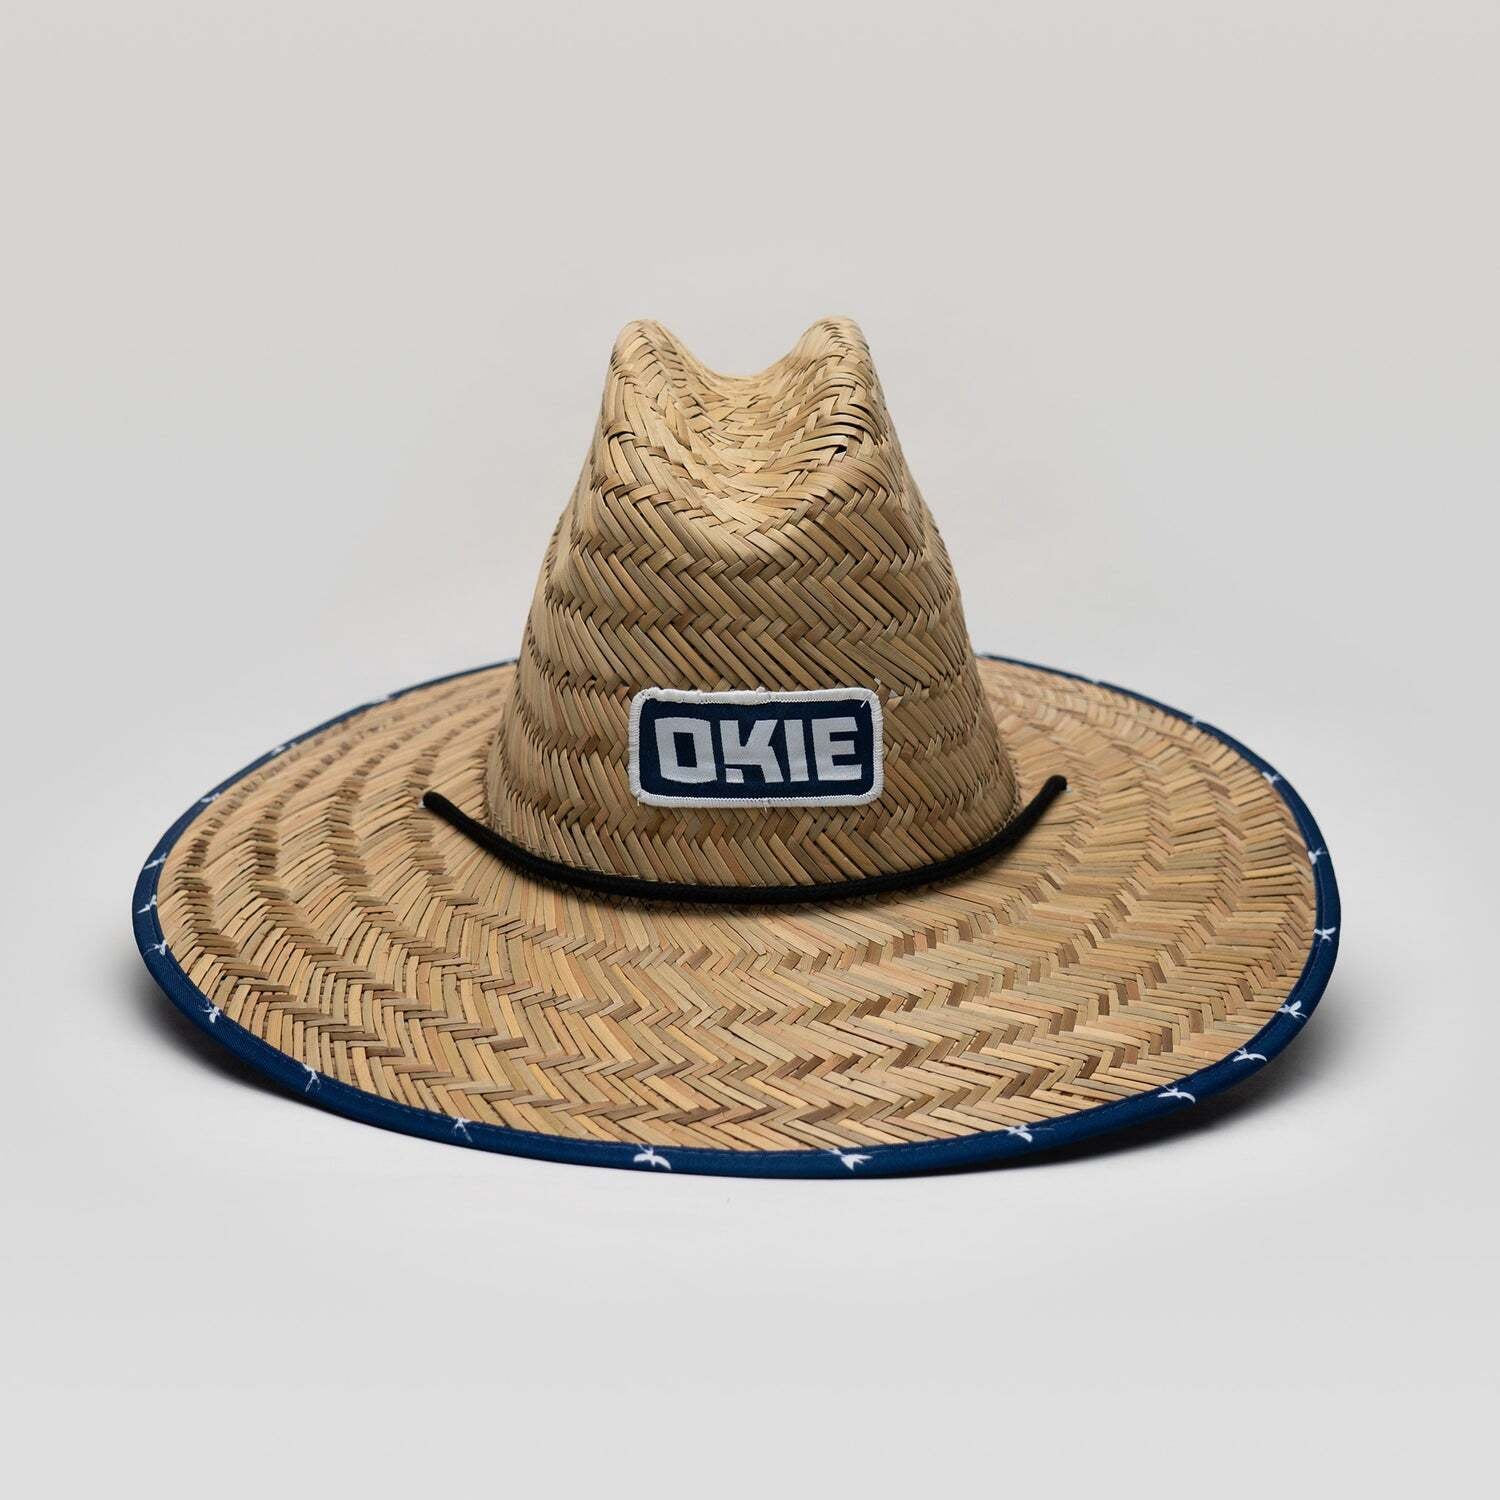 OBHW - The Okie Brand (Scissortail Straw Hat)